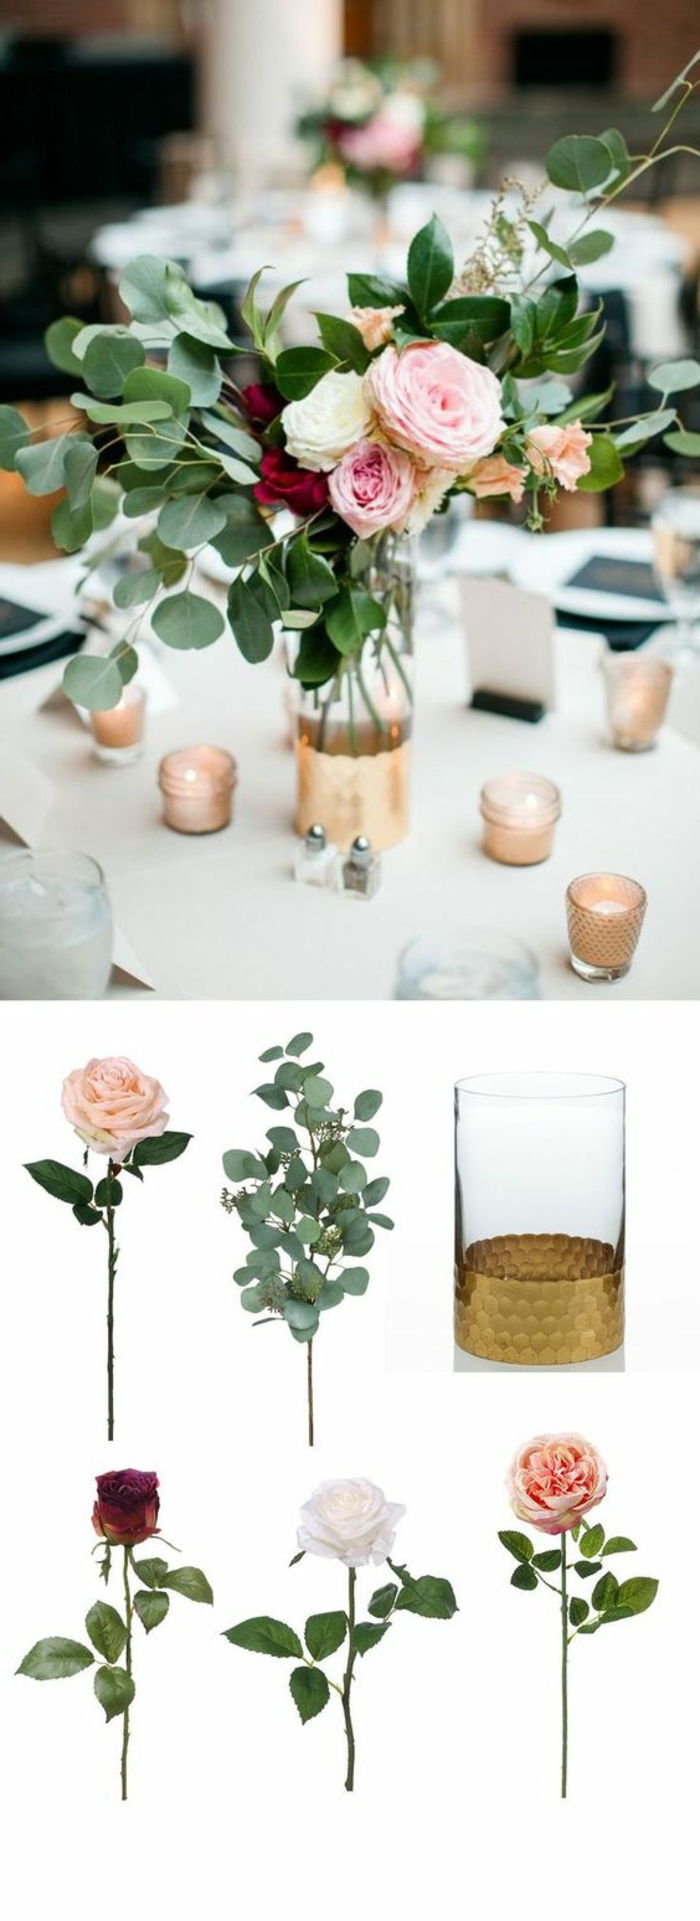 praznična okrasna miza, steklena vaza, okrašena z zlato barvo, vrtnice